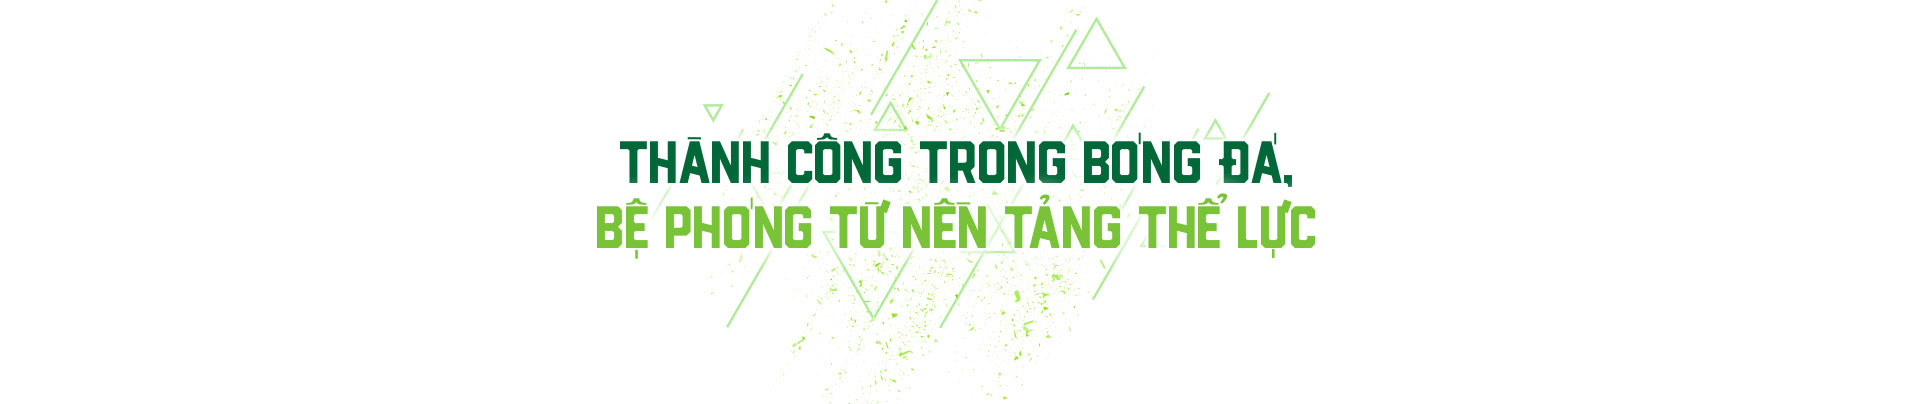 Herbalife - Dinh dưỡng lành mạnh tiếp sức các đội tuyển bóng đá Việt Nam - Ảnh 4.